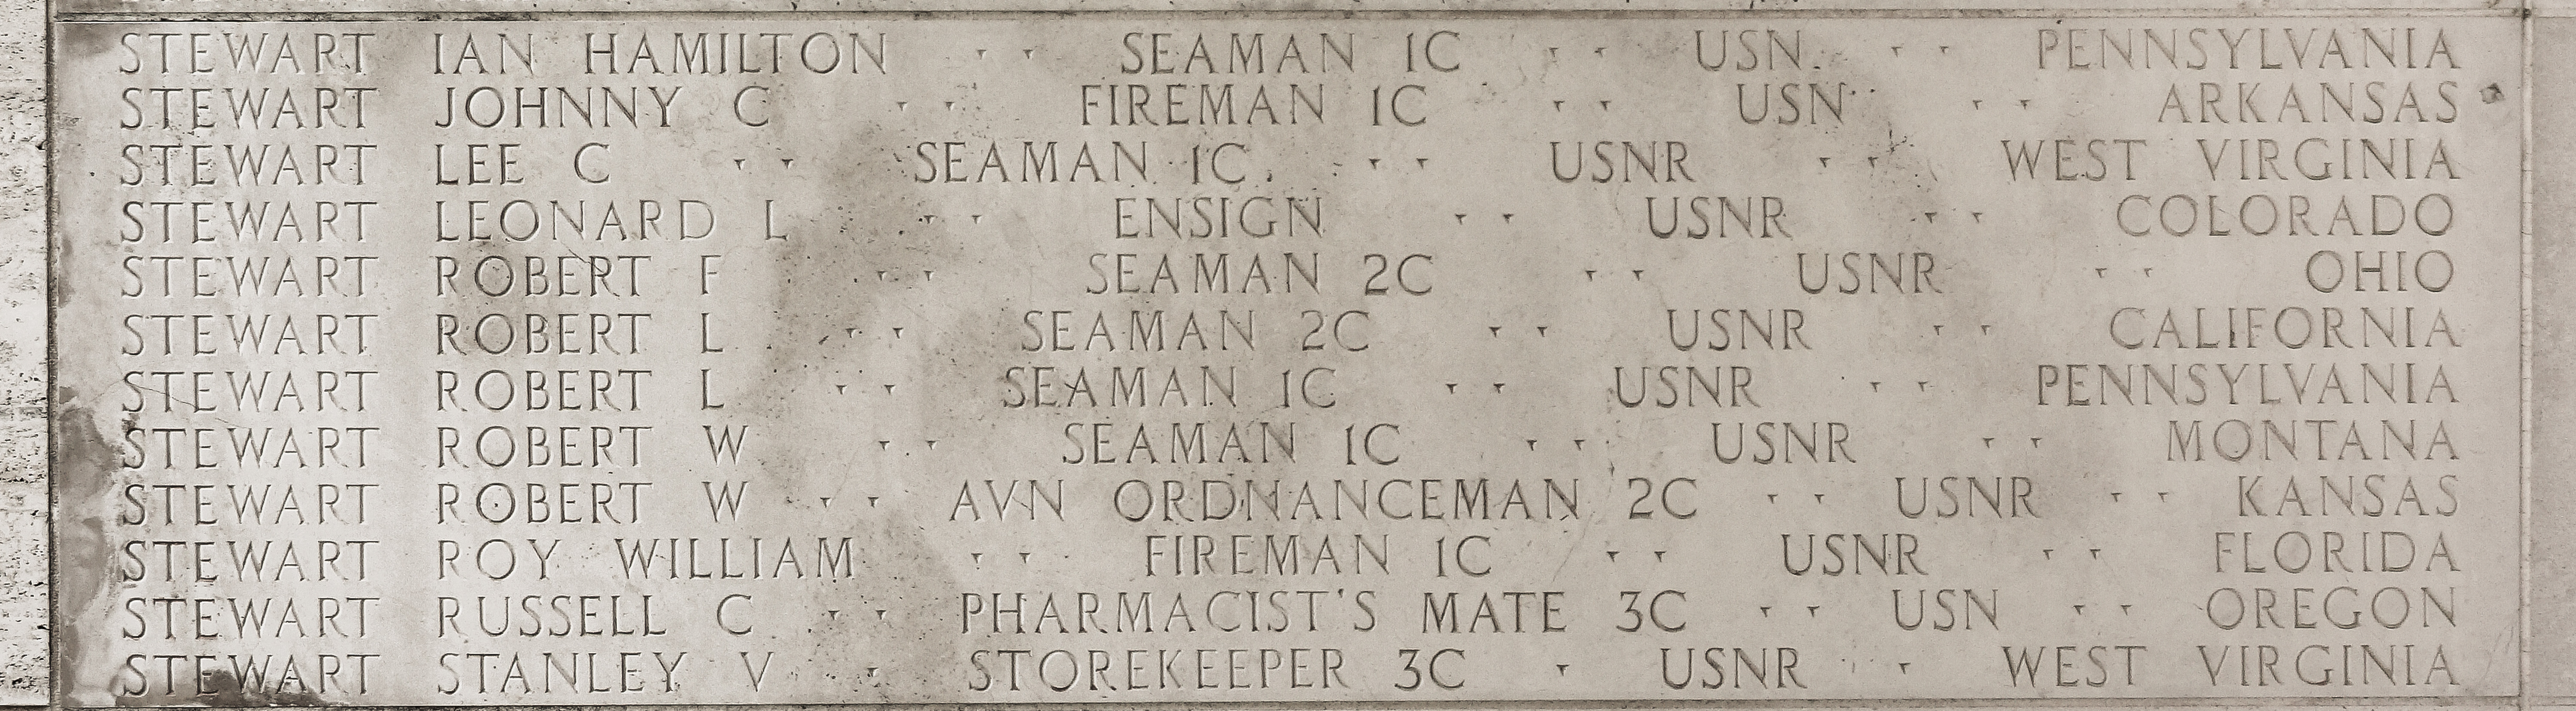 Robert F. Stewart, Seaman Second Class